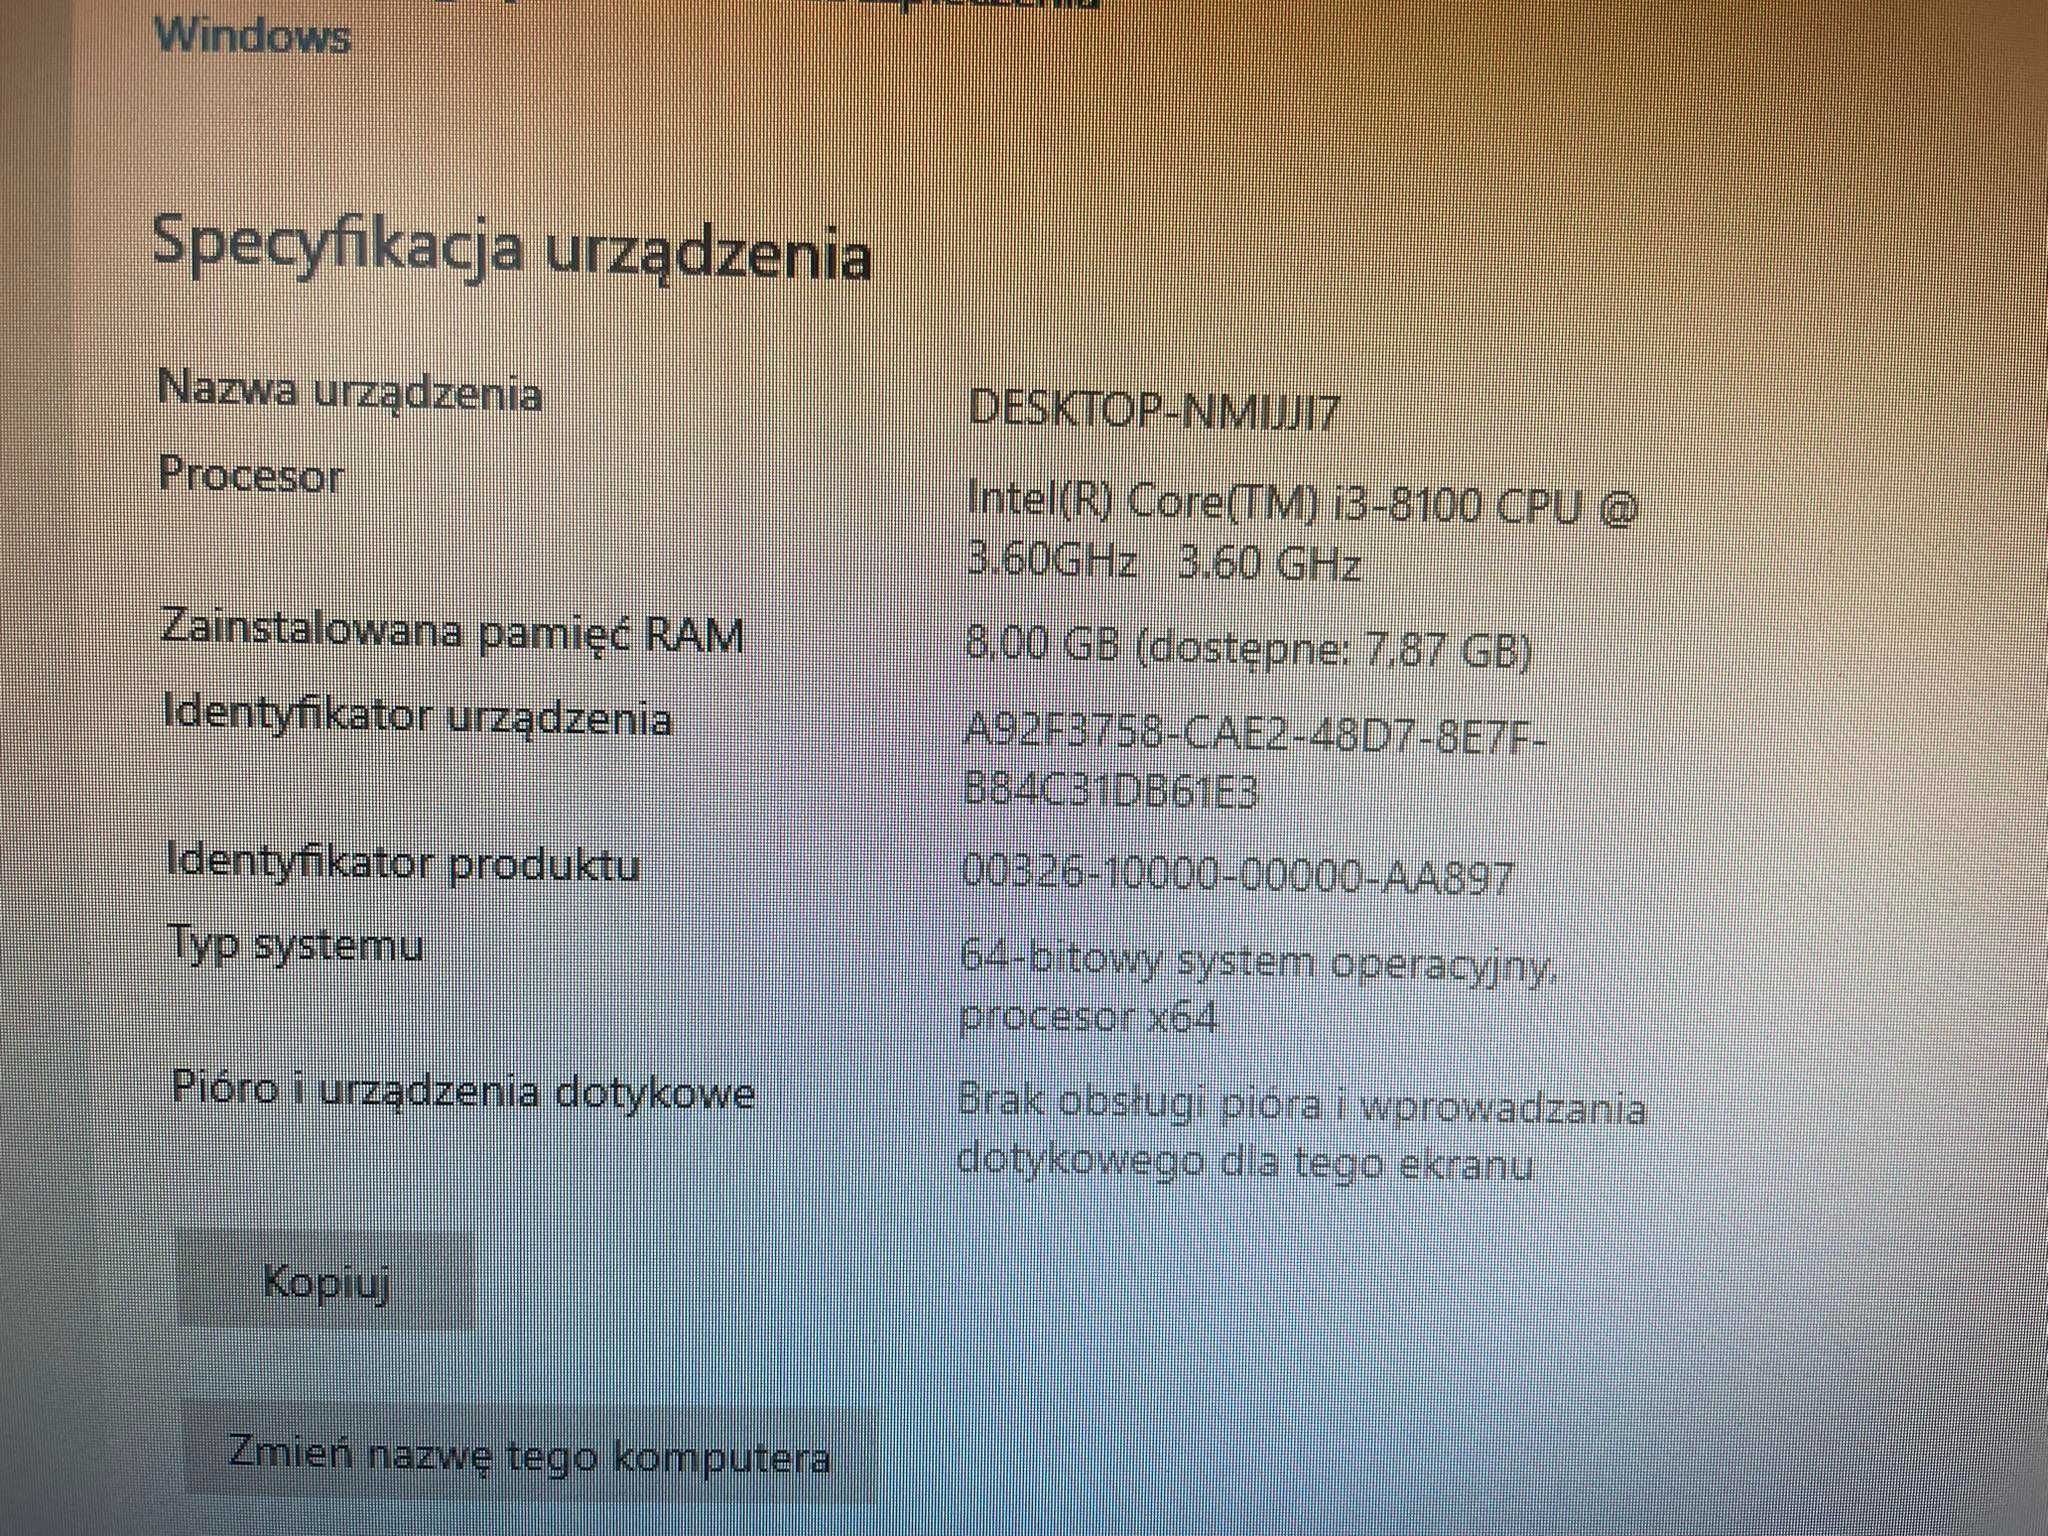 komputer stacjonarny pc, dysk ssd, RAM  8GB